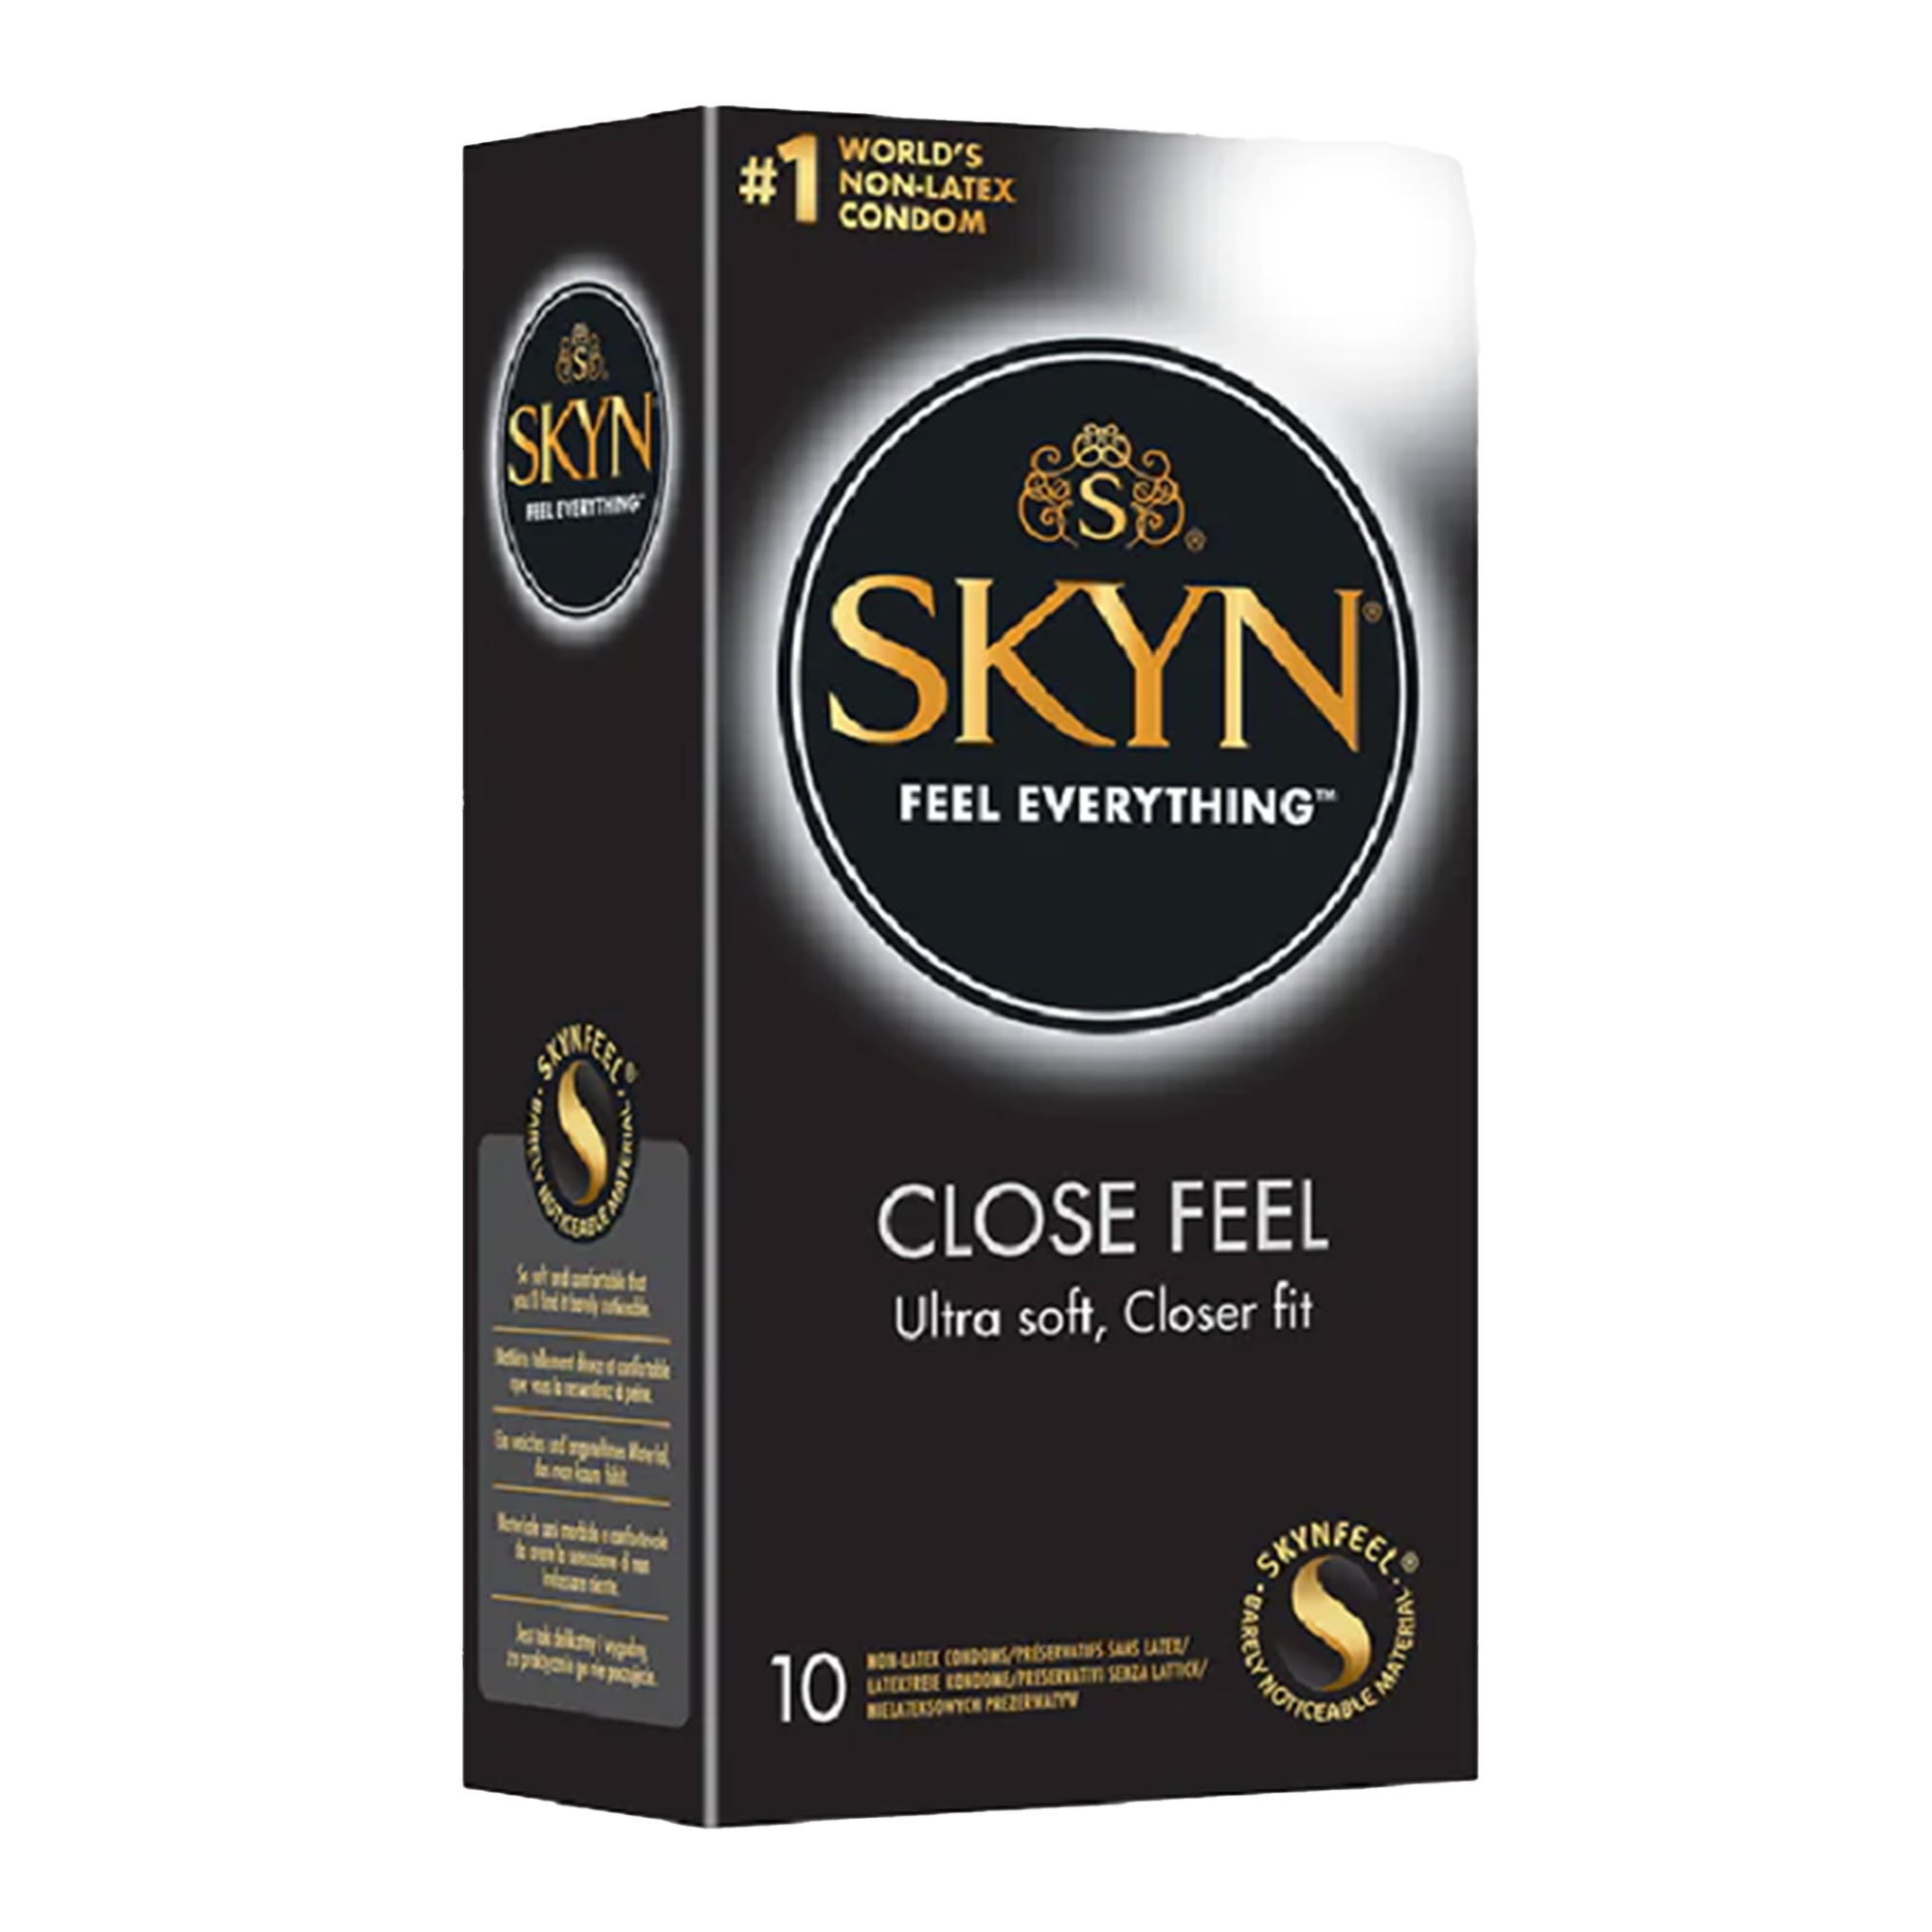 Brug Skyn Close Feel 10-pack til en forbedret oplevelse